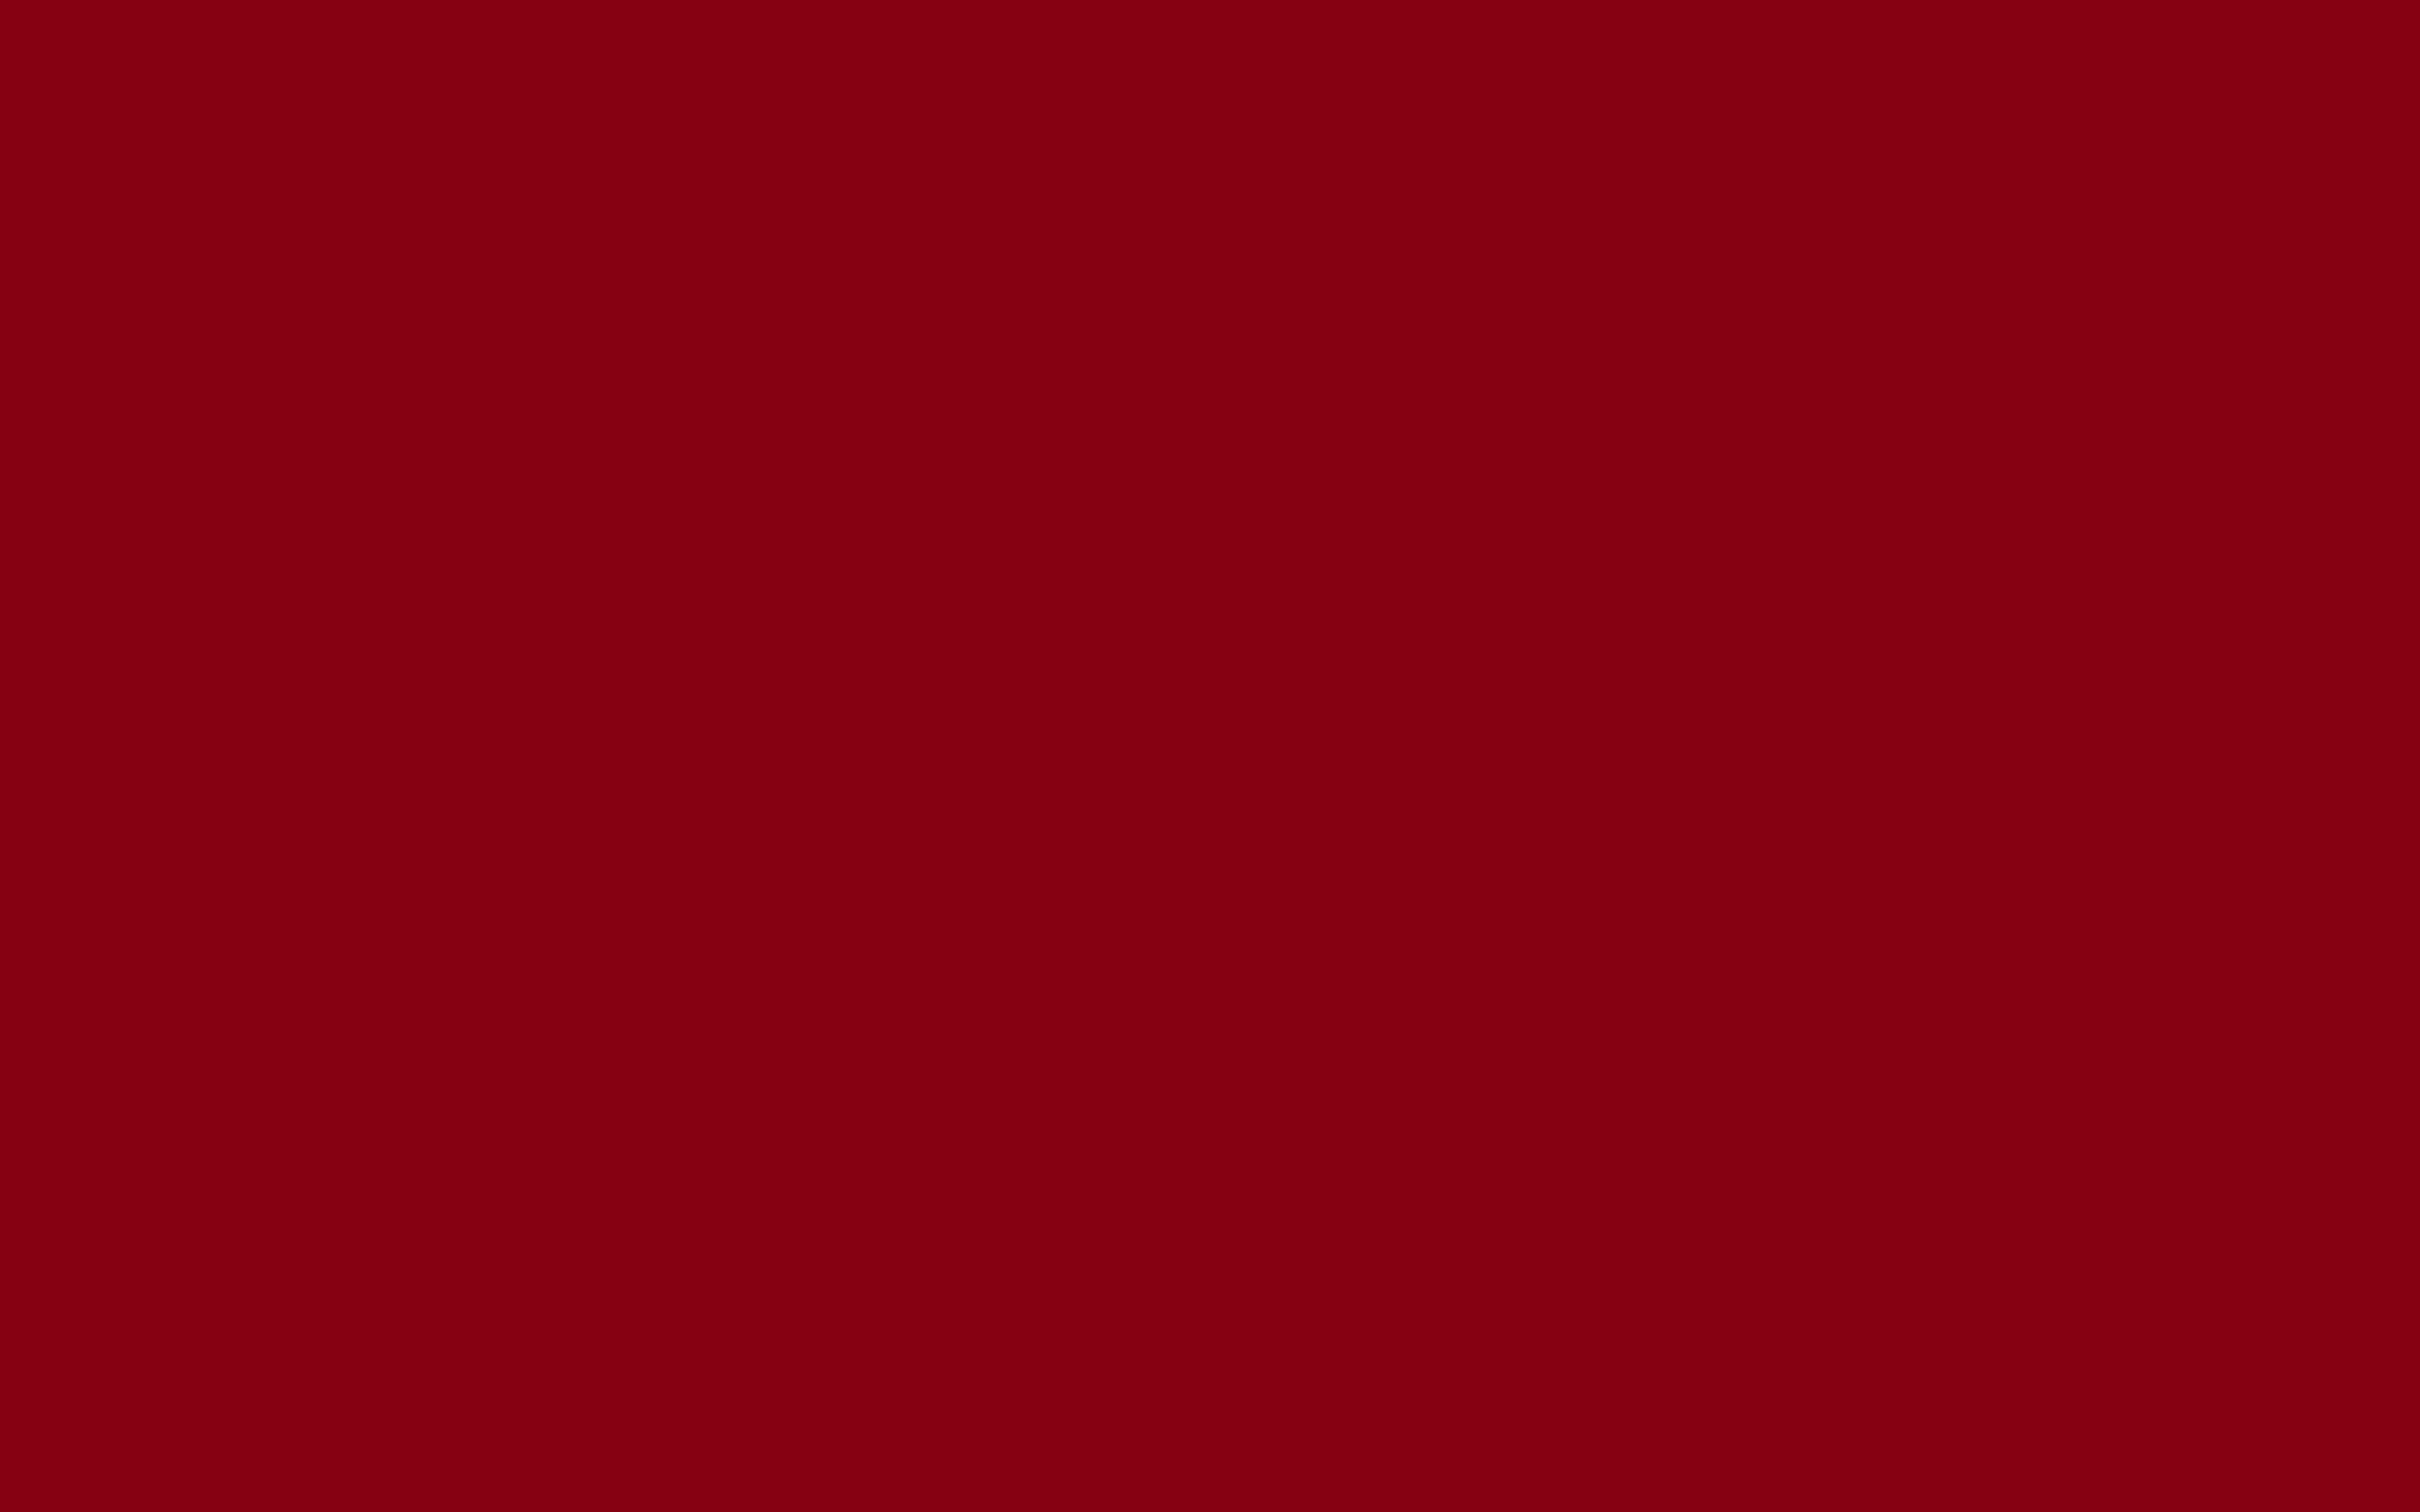 Tổng hợp 999 Red background aesthetic plain Chất lượng cao, tải miễn phí